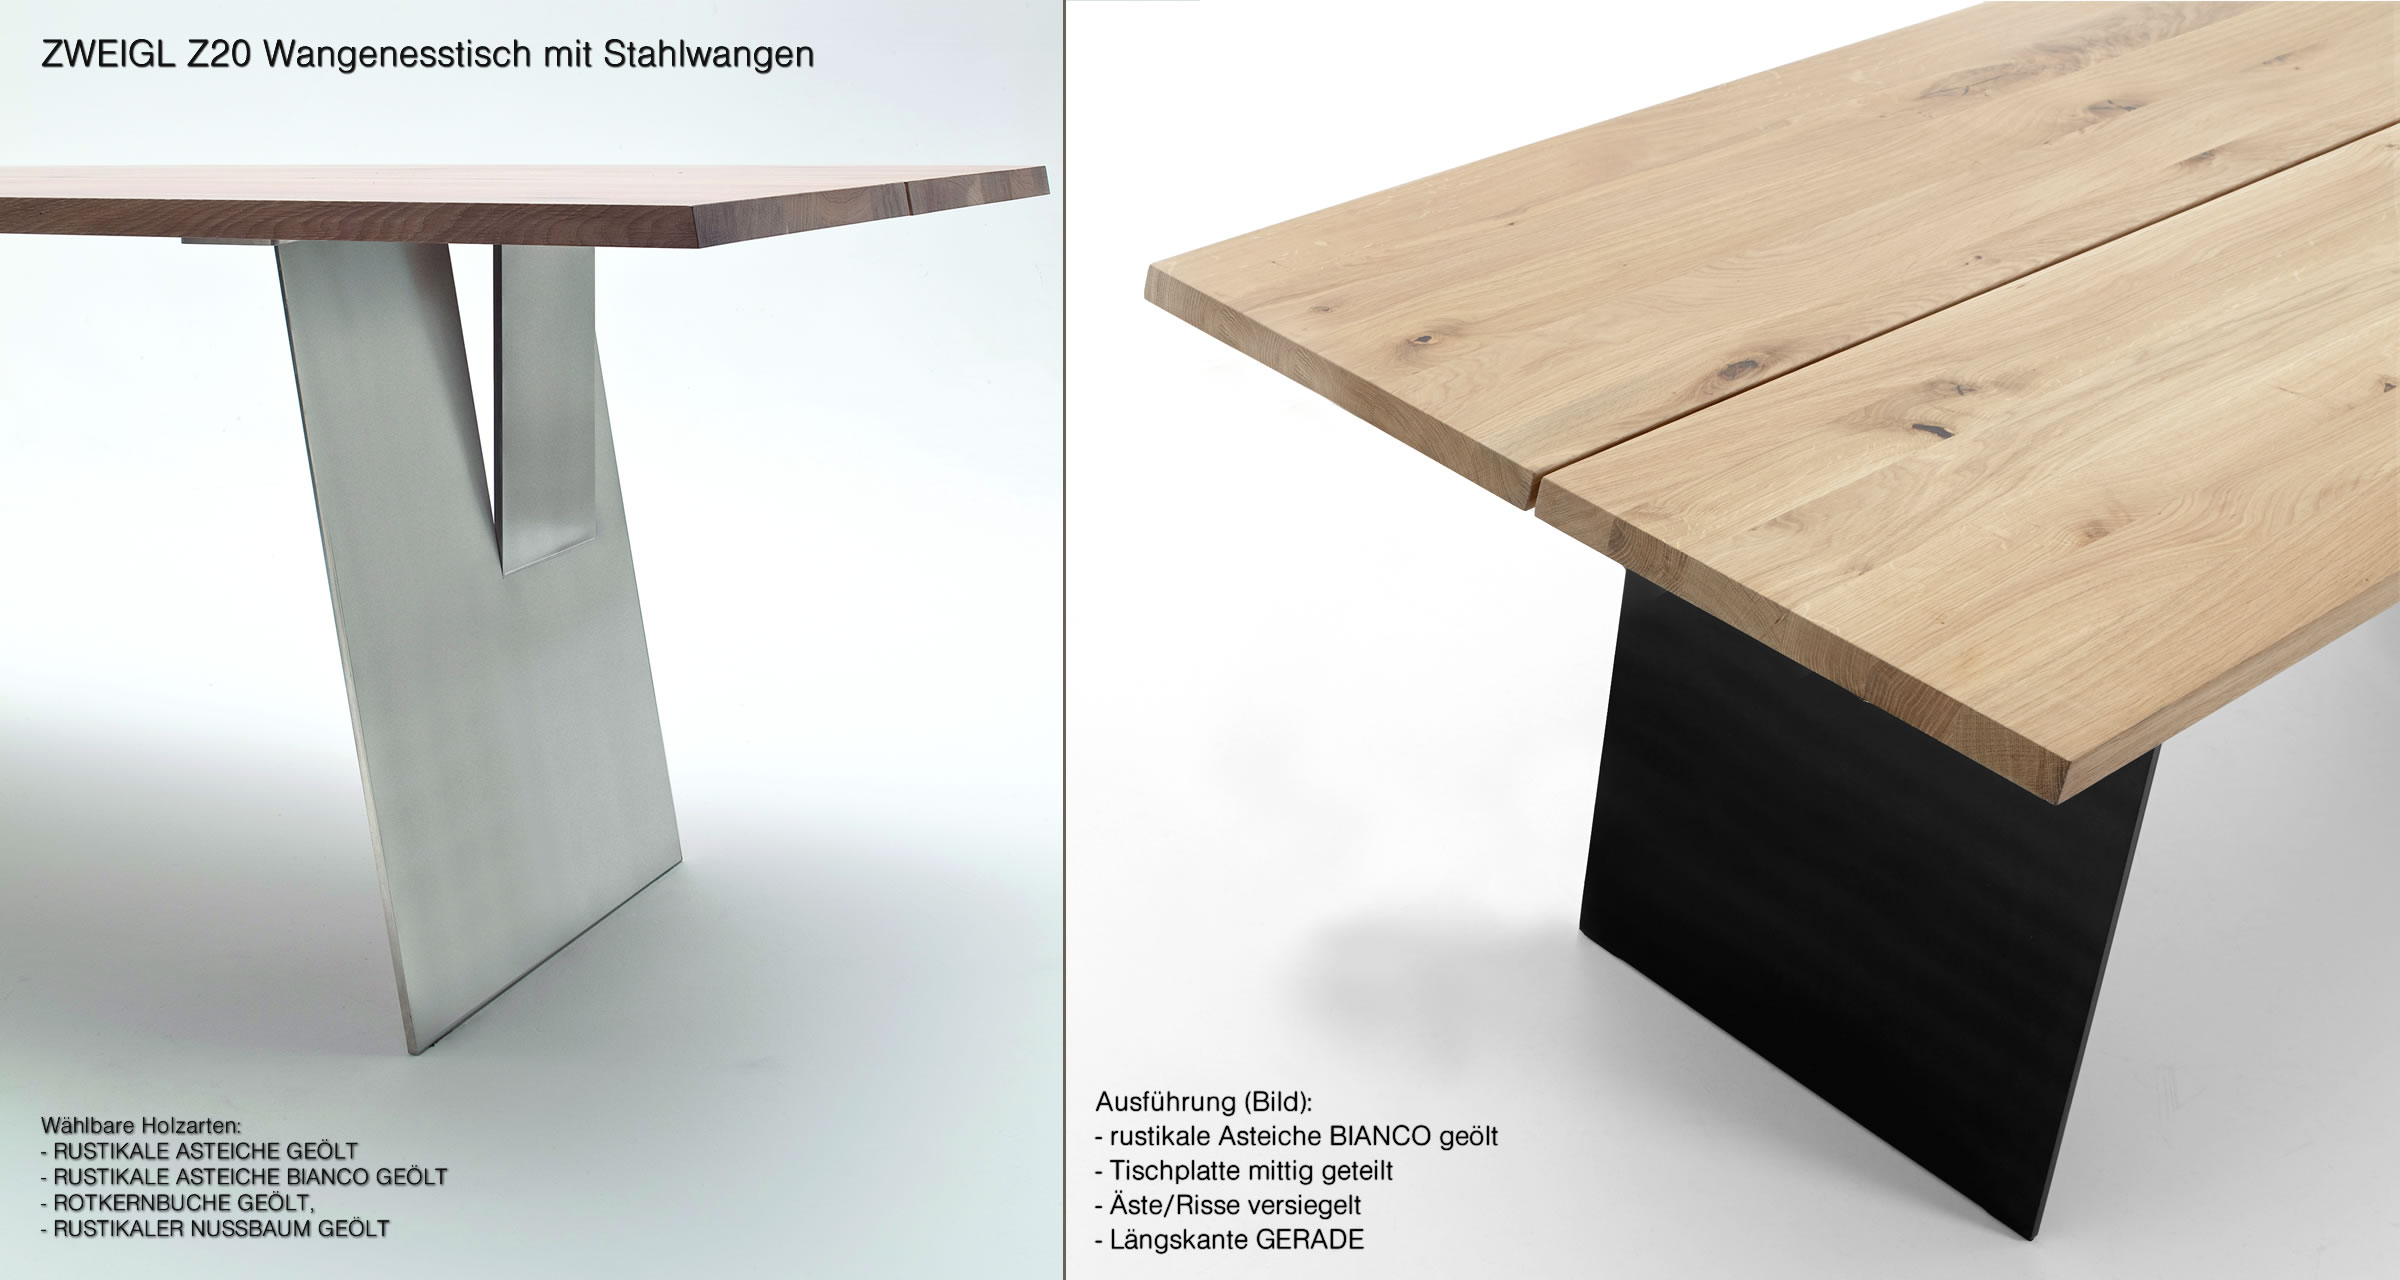 ZWEIGL Z20 Massivholz-Tisch von - NIEHOFF nachhaltigem aus Stahlwangen Wimmer aus Asteiche. Massivholz | Möbel bei mit in rustikaler Massivholz